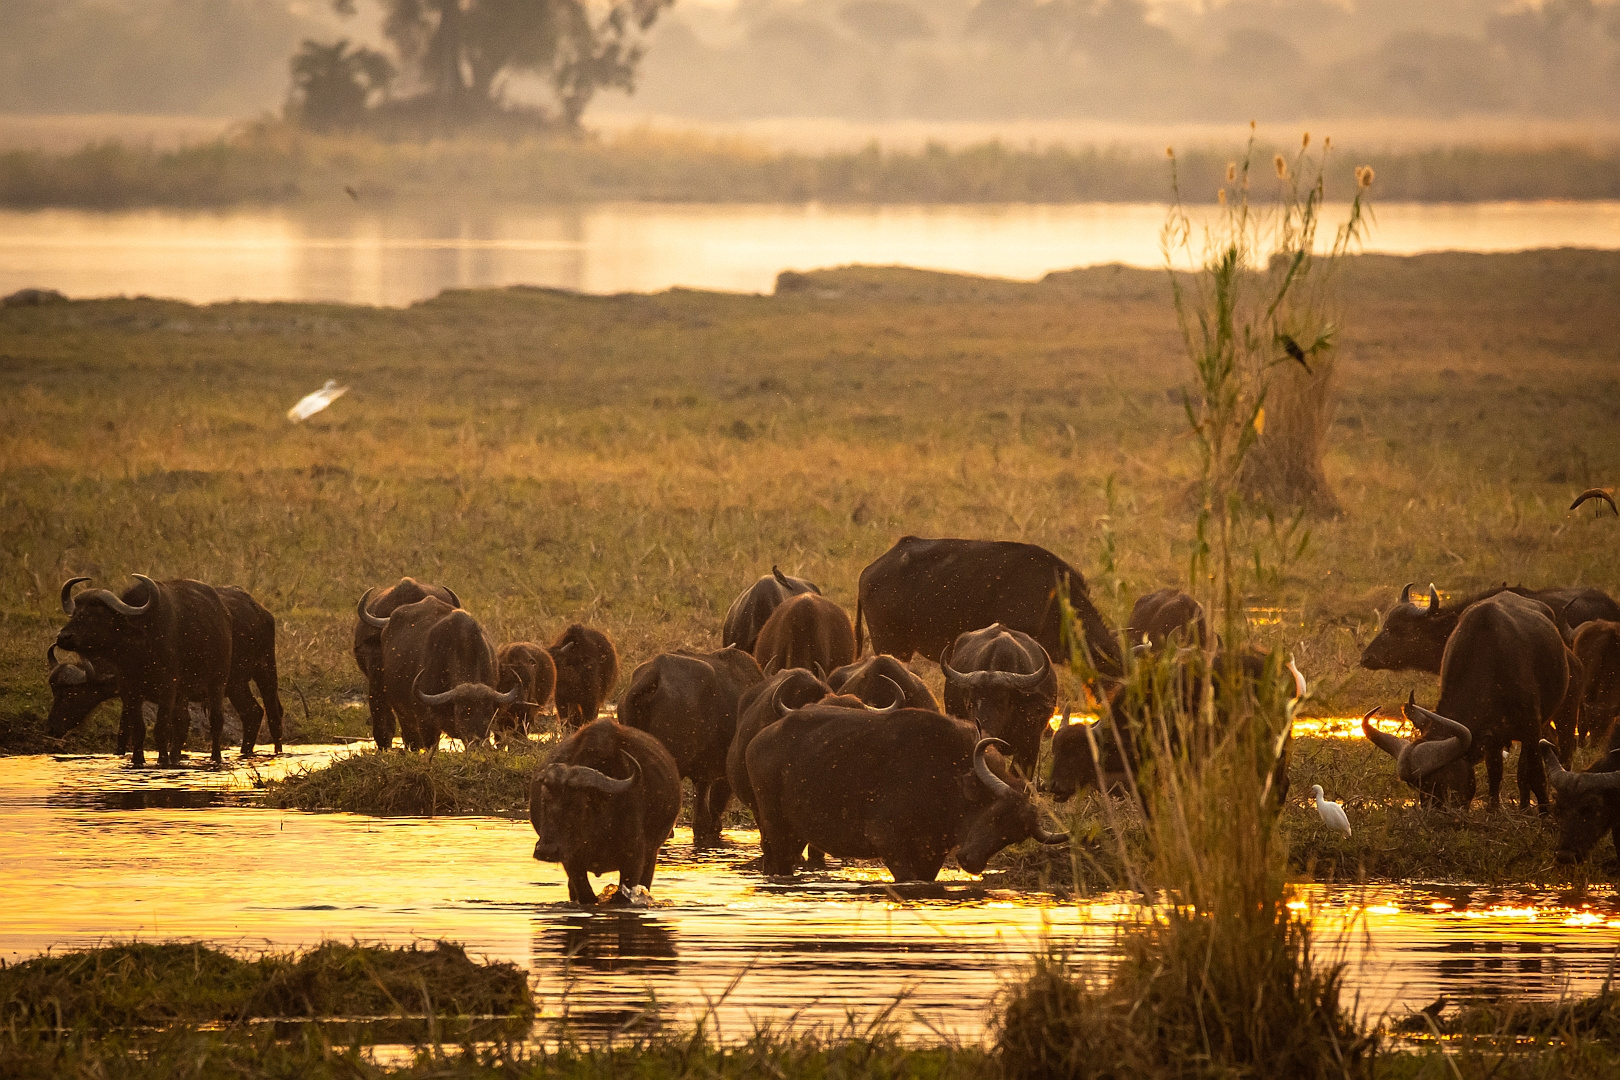 Abendstimmung am Okavango